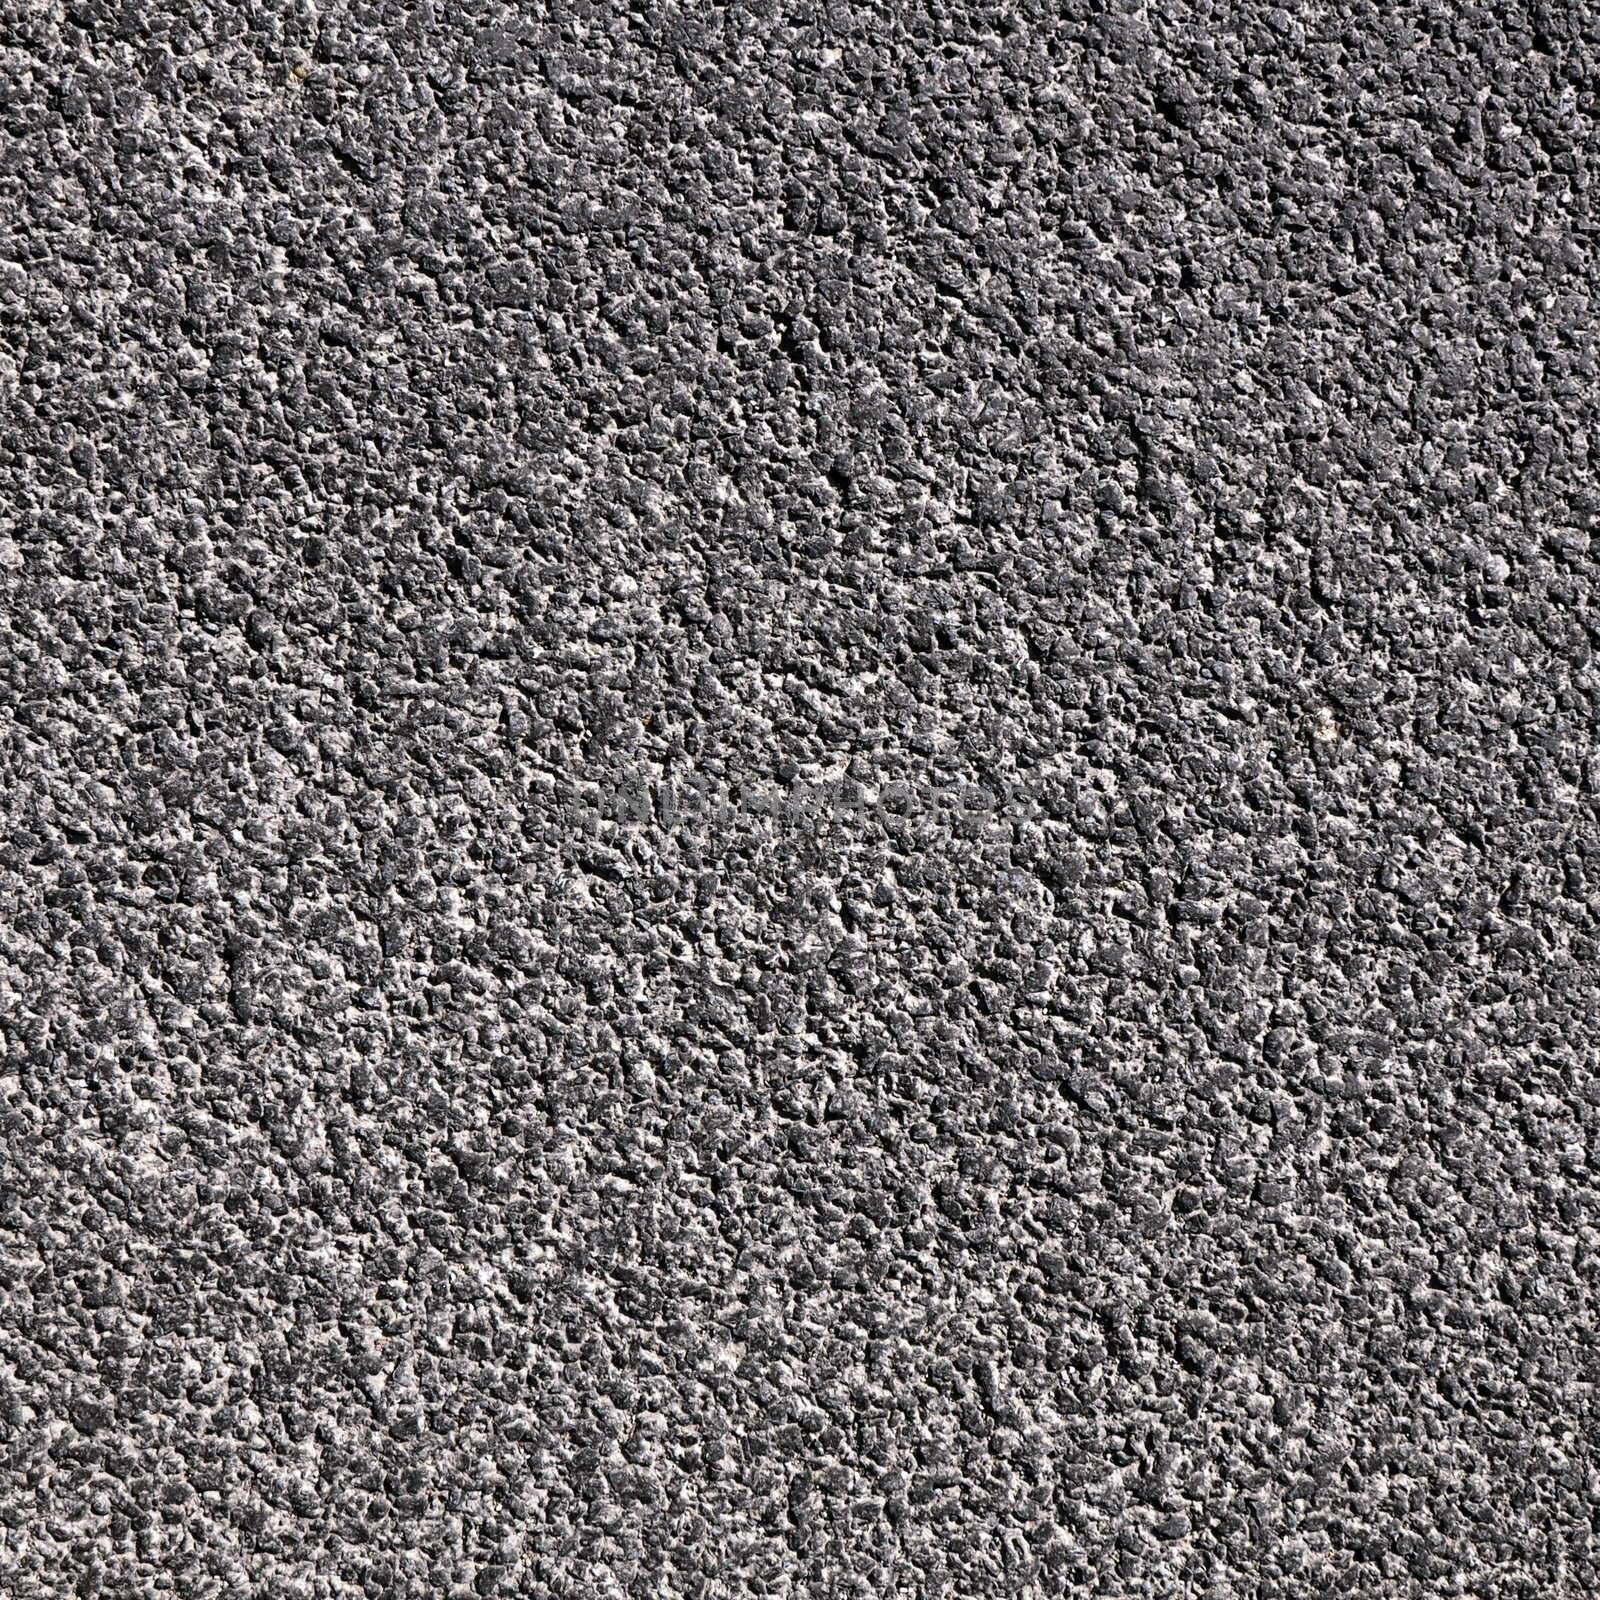 asphalt by gunnar3000